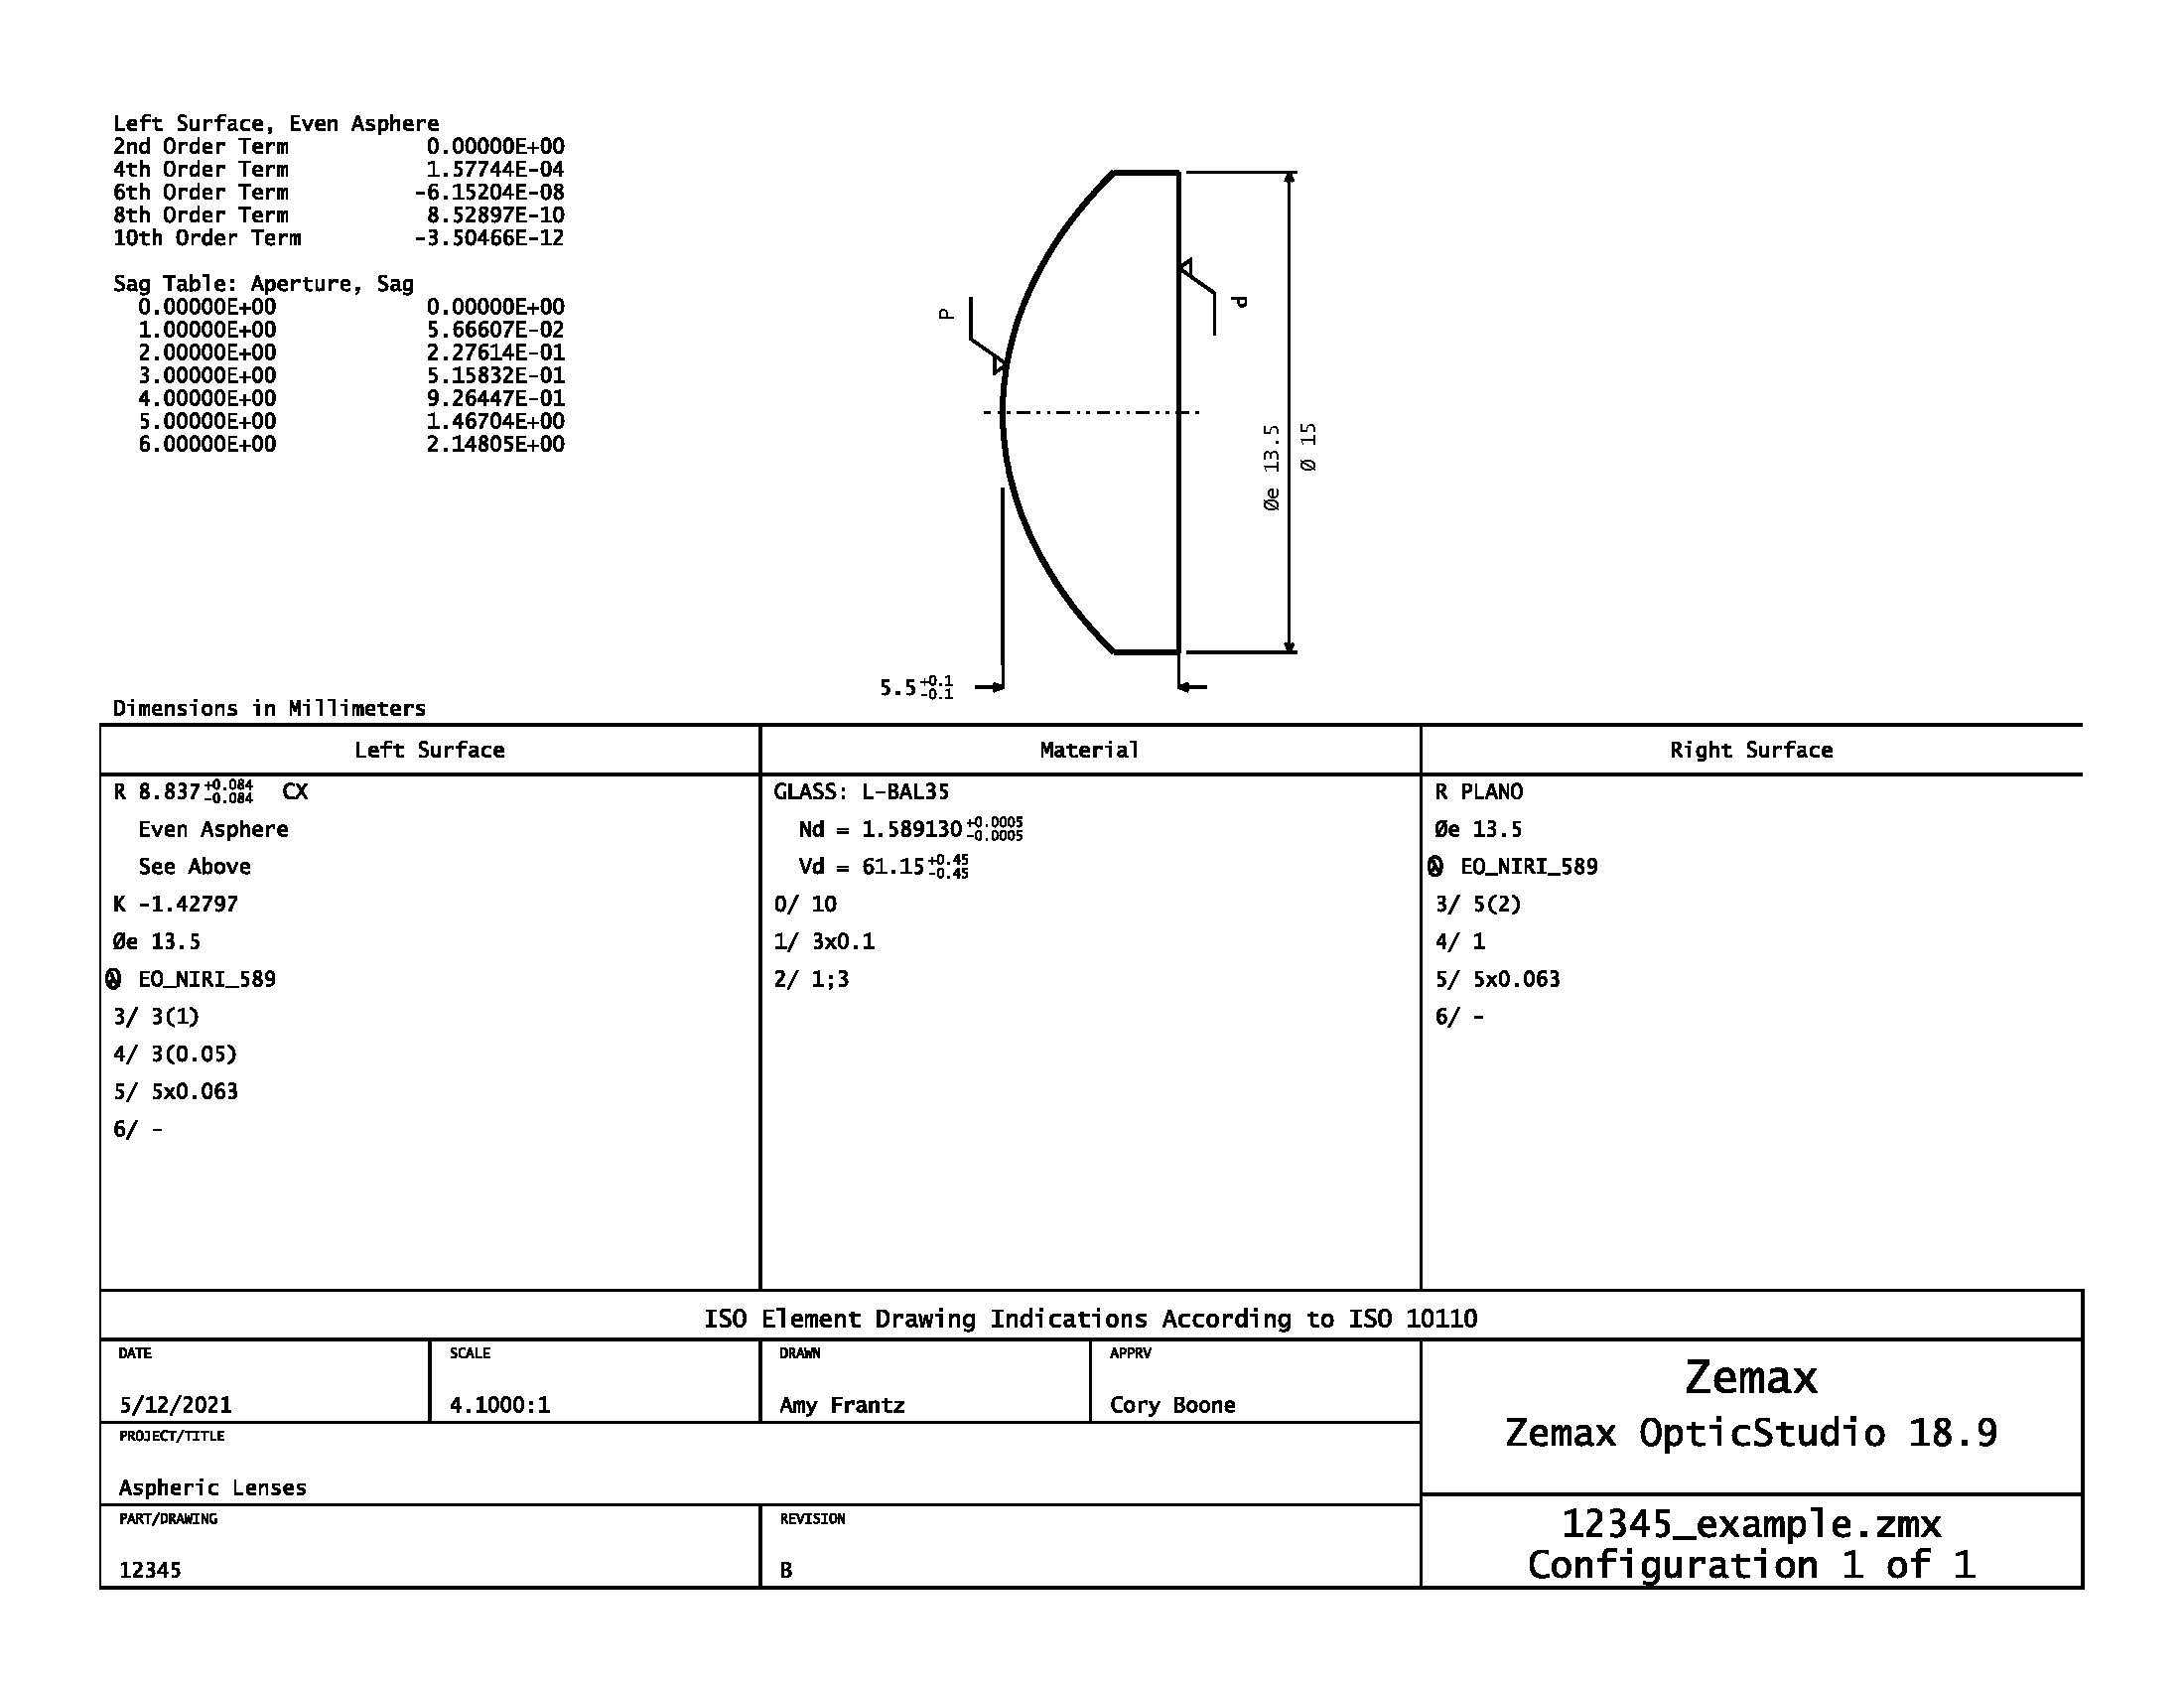 Ce dessin ISO typique d'une lentille asphérique suit les conventions définies dans la norme ISO 10110. Cliquez ici pour télécharger un PDF de ce dessin pour l'examiner de plus près.